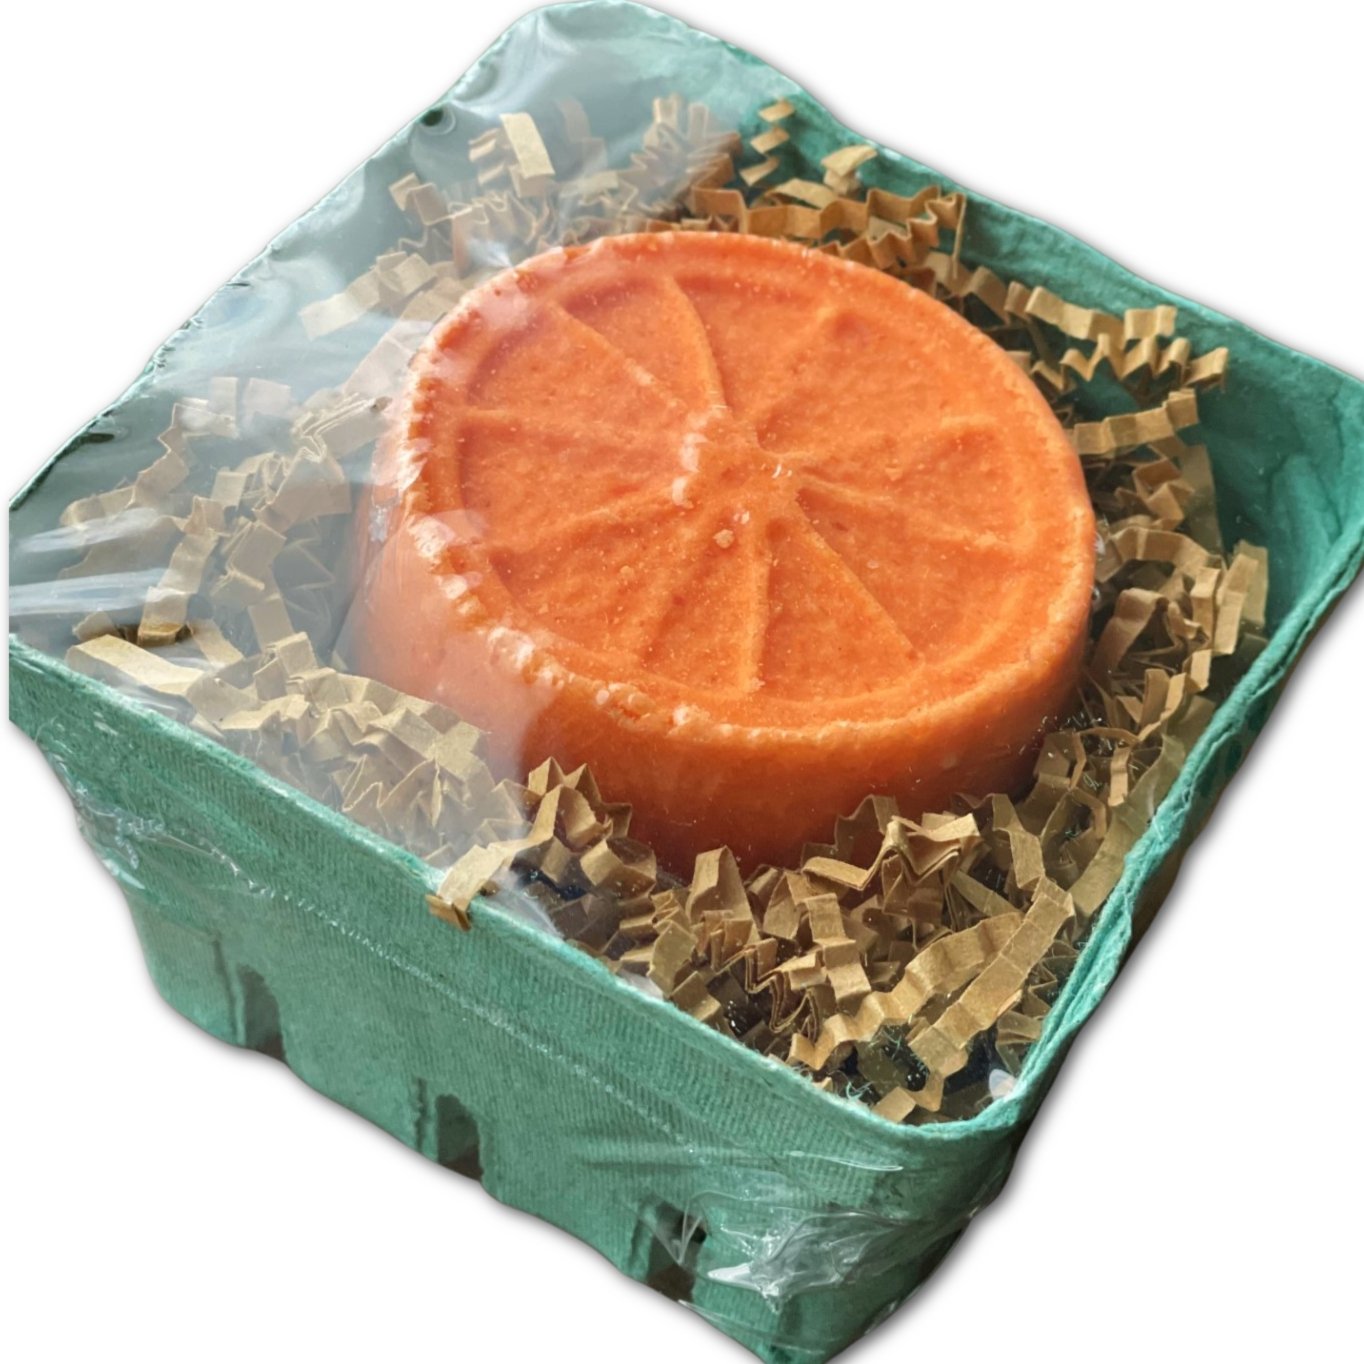 Produce Box with Bath Bomb - Oily BlendsProduce Box with Bath Bomb